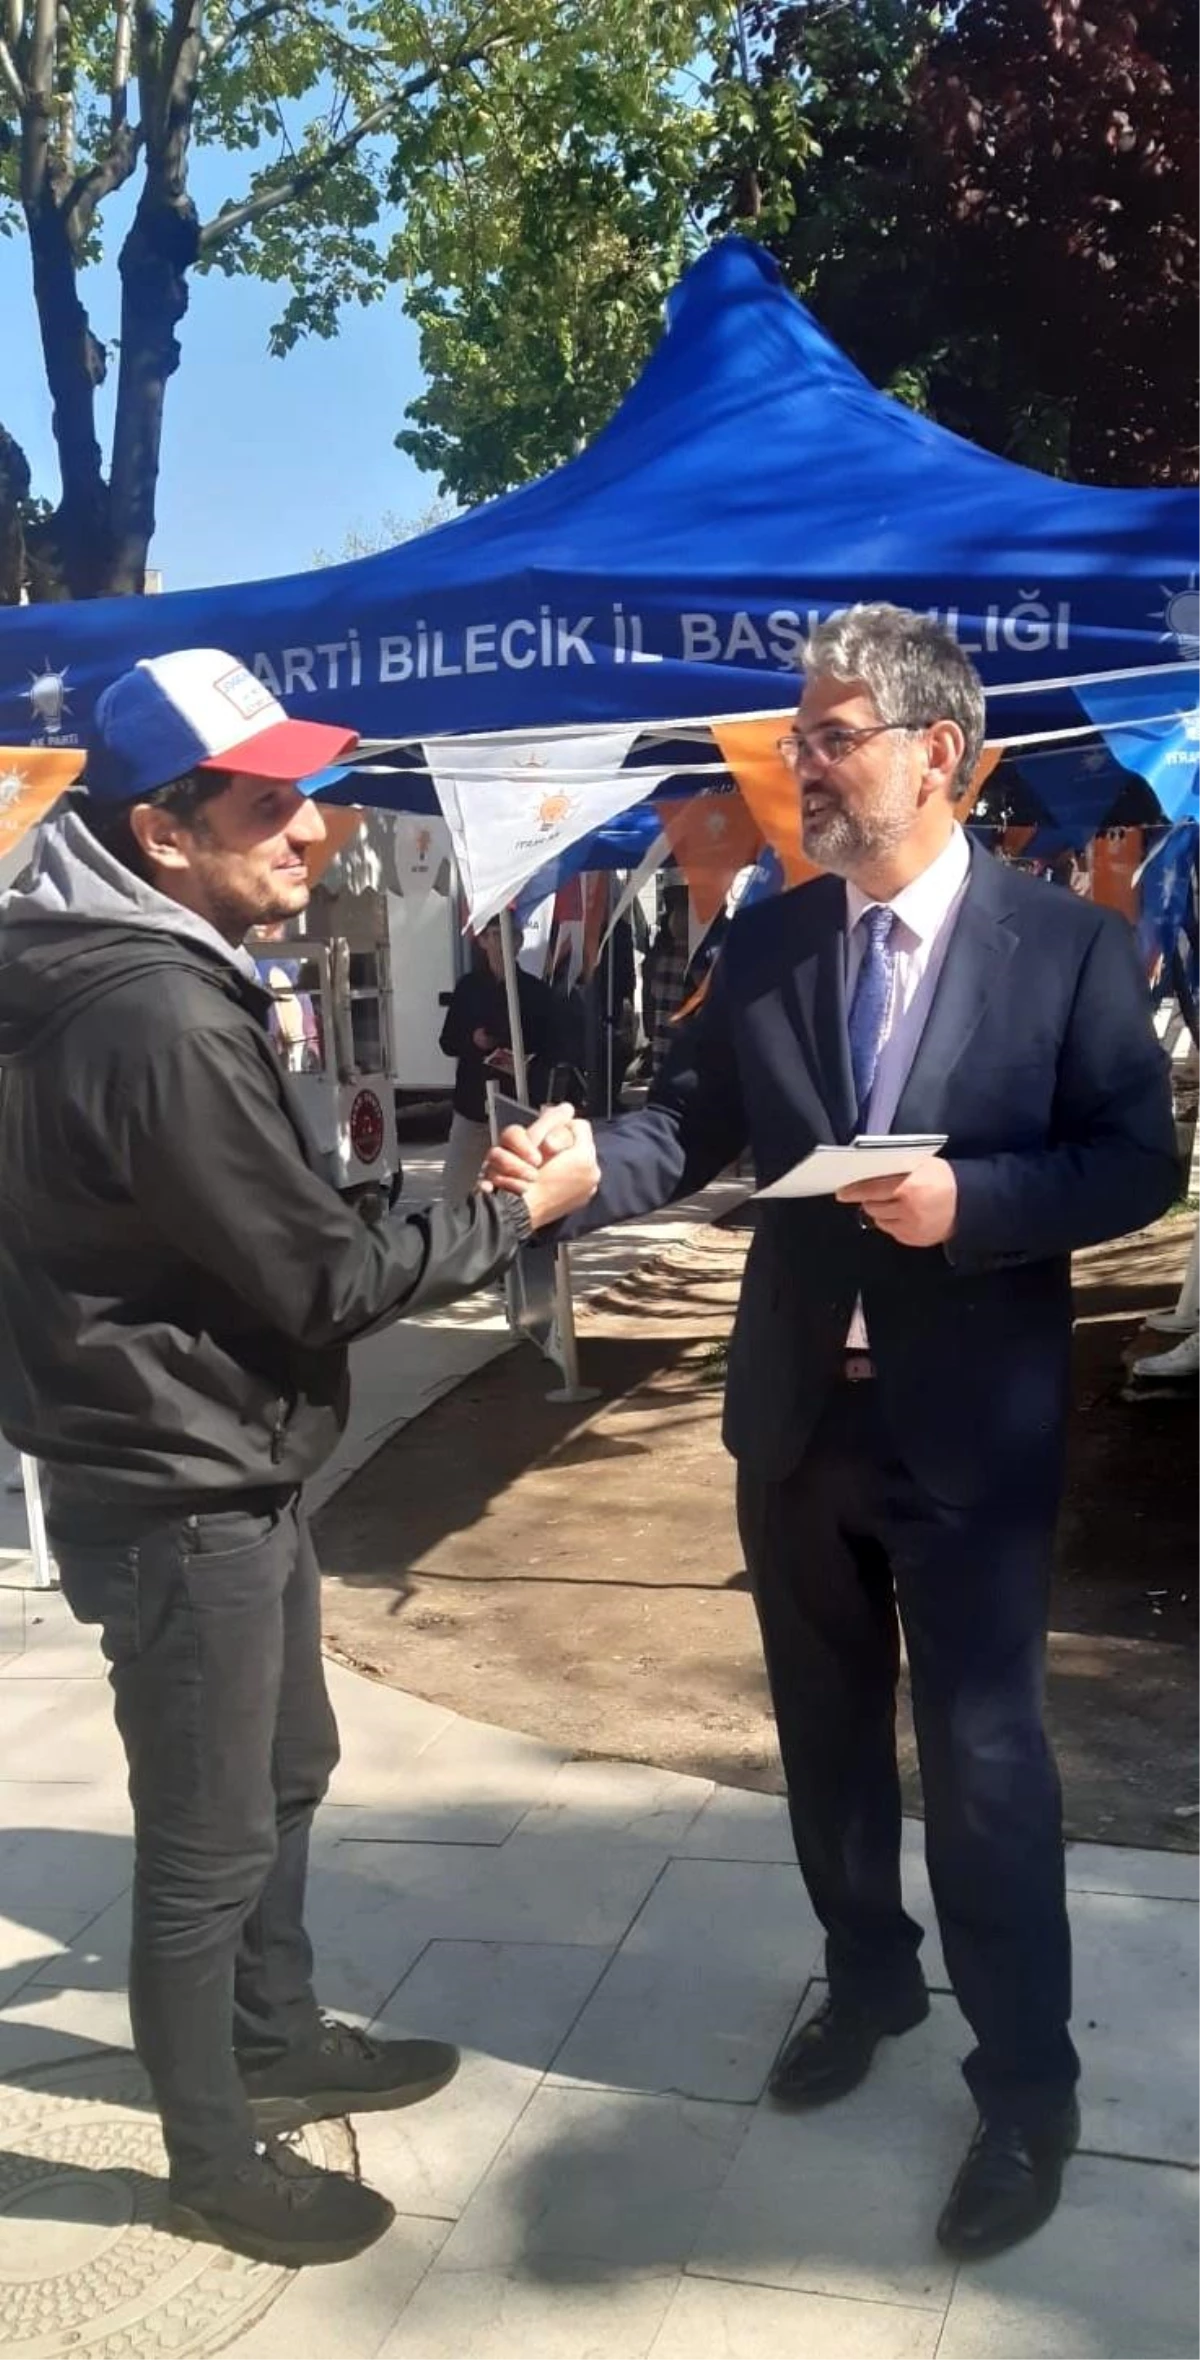 Bilecik Gölpazarı Belediye Başkanı Hayri Suer, AK Parti seçim standında broşür dağıttı